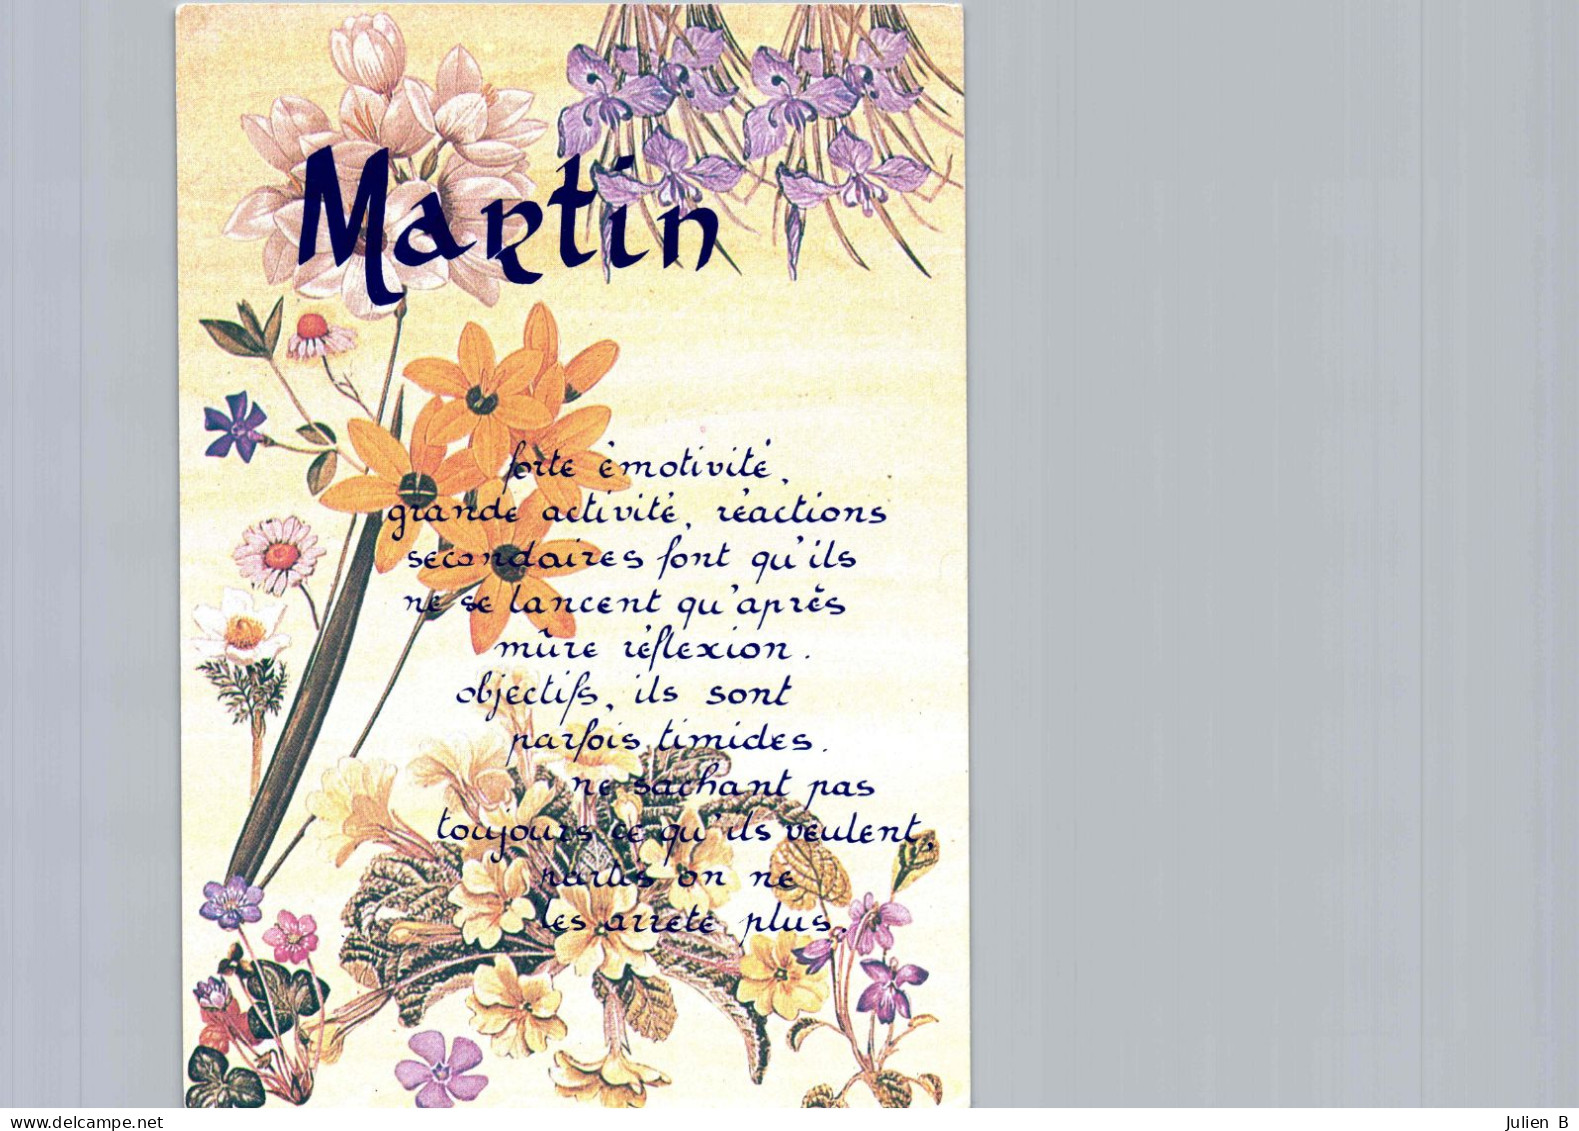 Martin, Edition ICDF - Firstnames